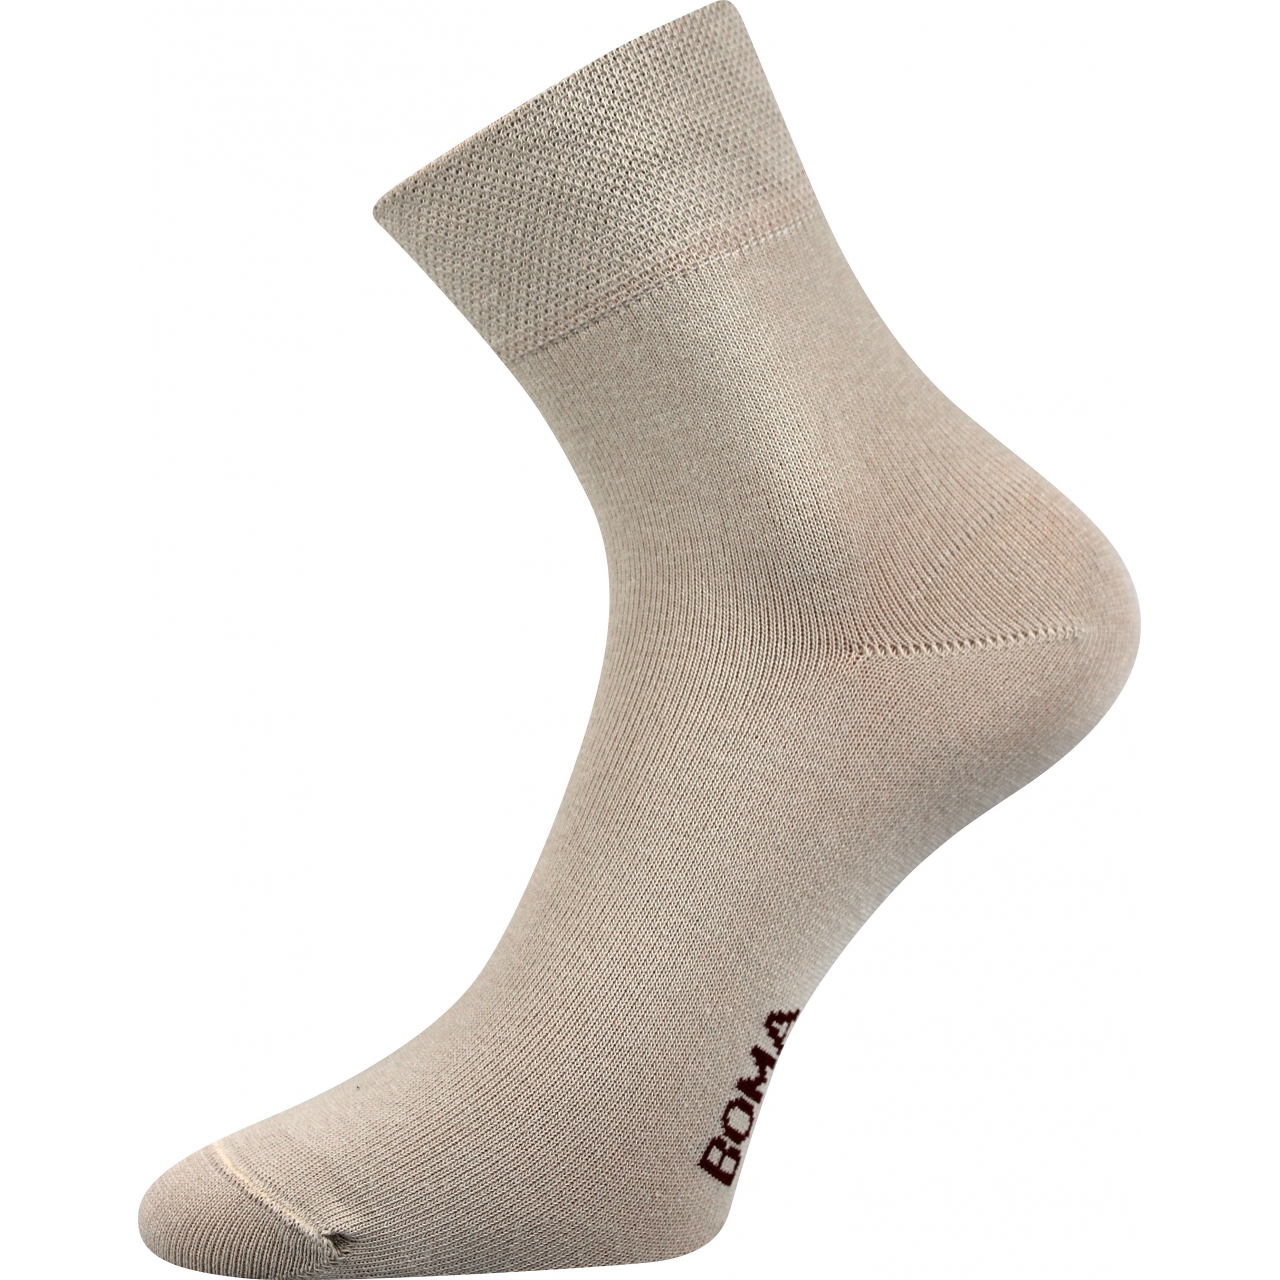 Ponožky unisex klasické Boma Zazr - béžové, 39-42